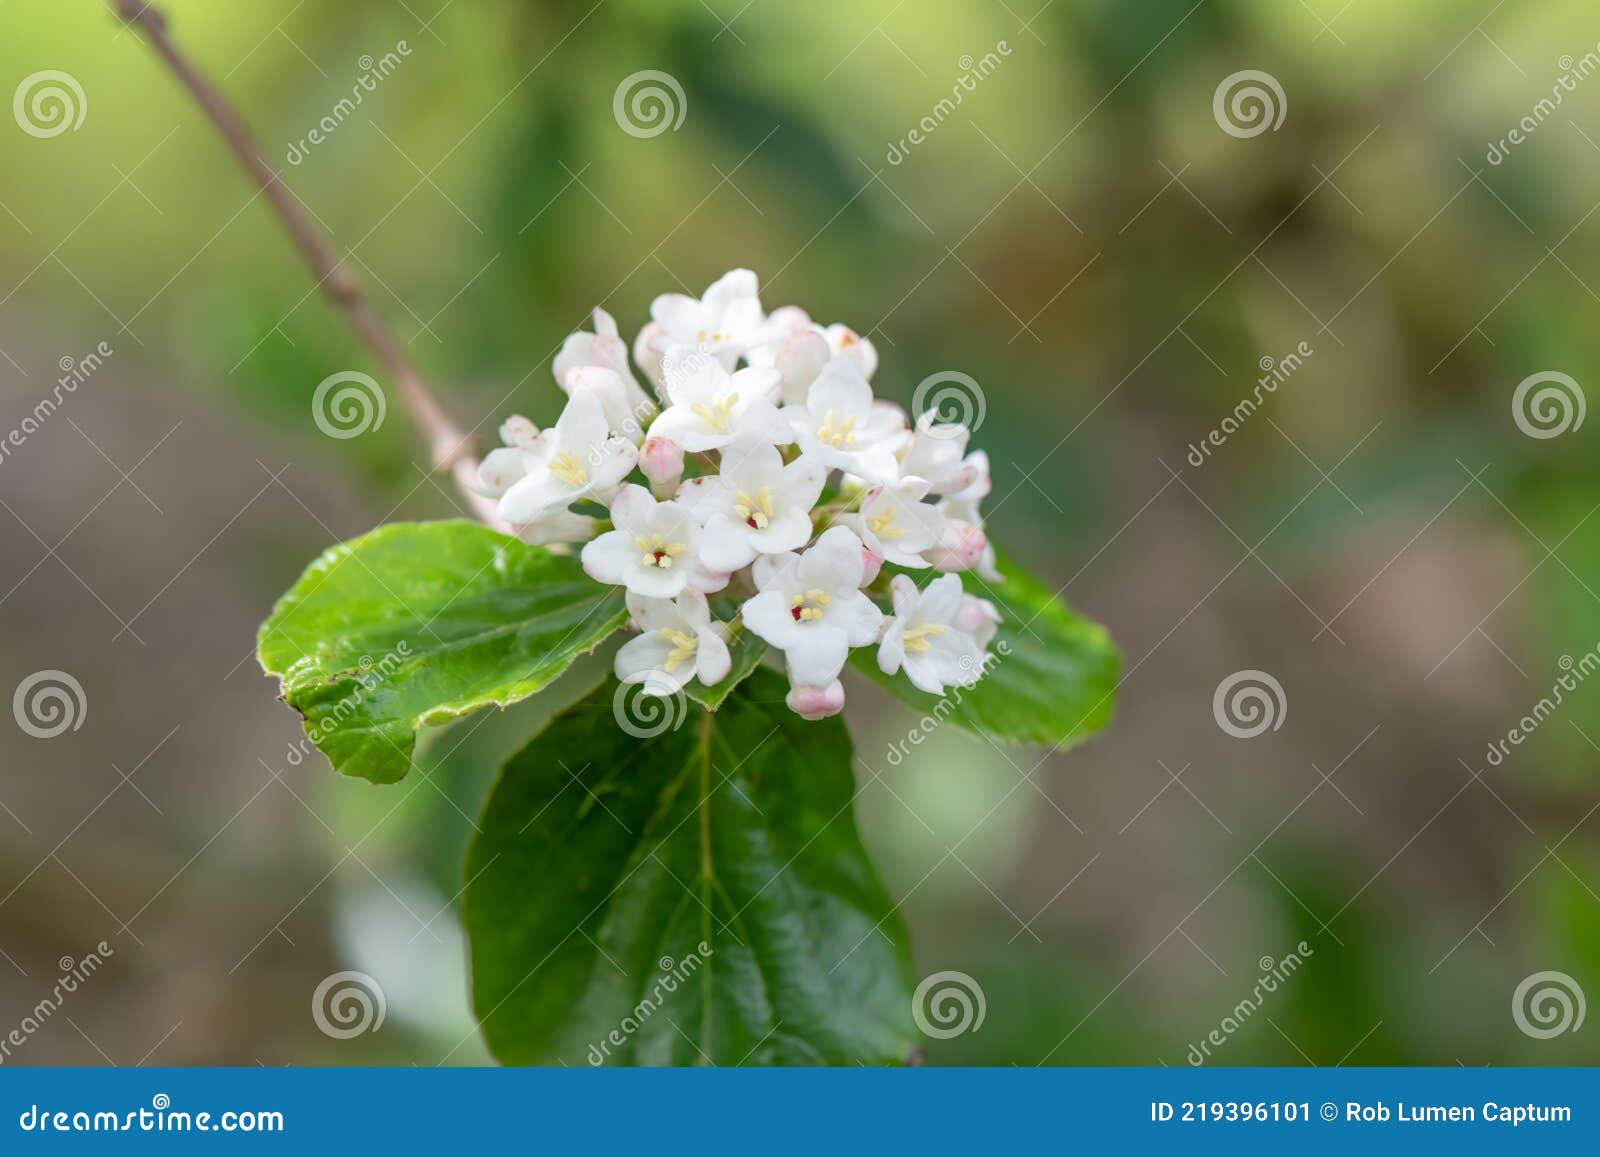 burkwood viburnum burkwoodii, cluster of pinkish-white flowers